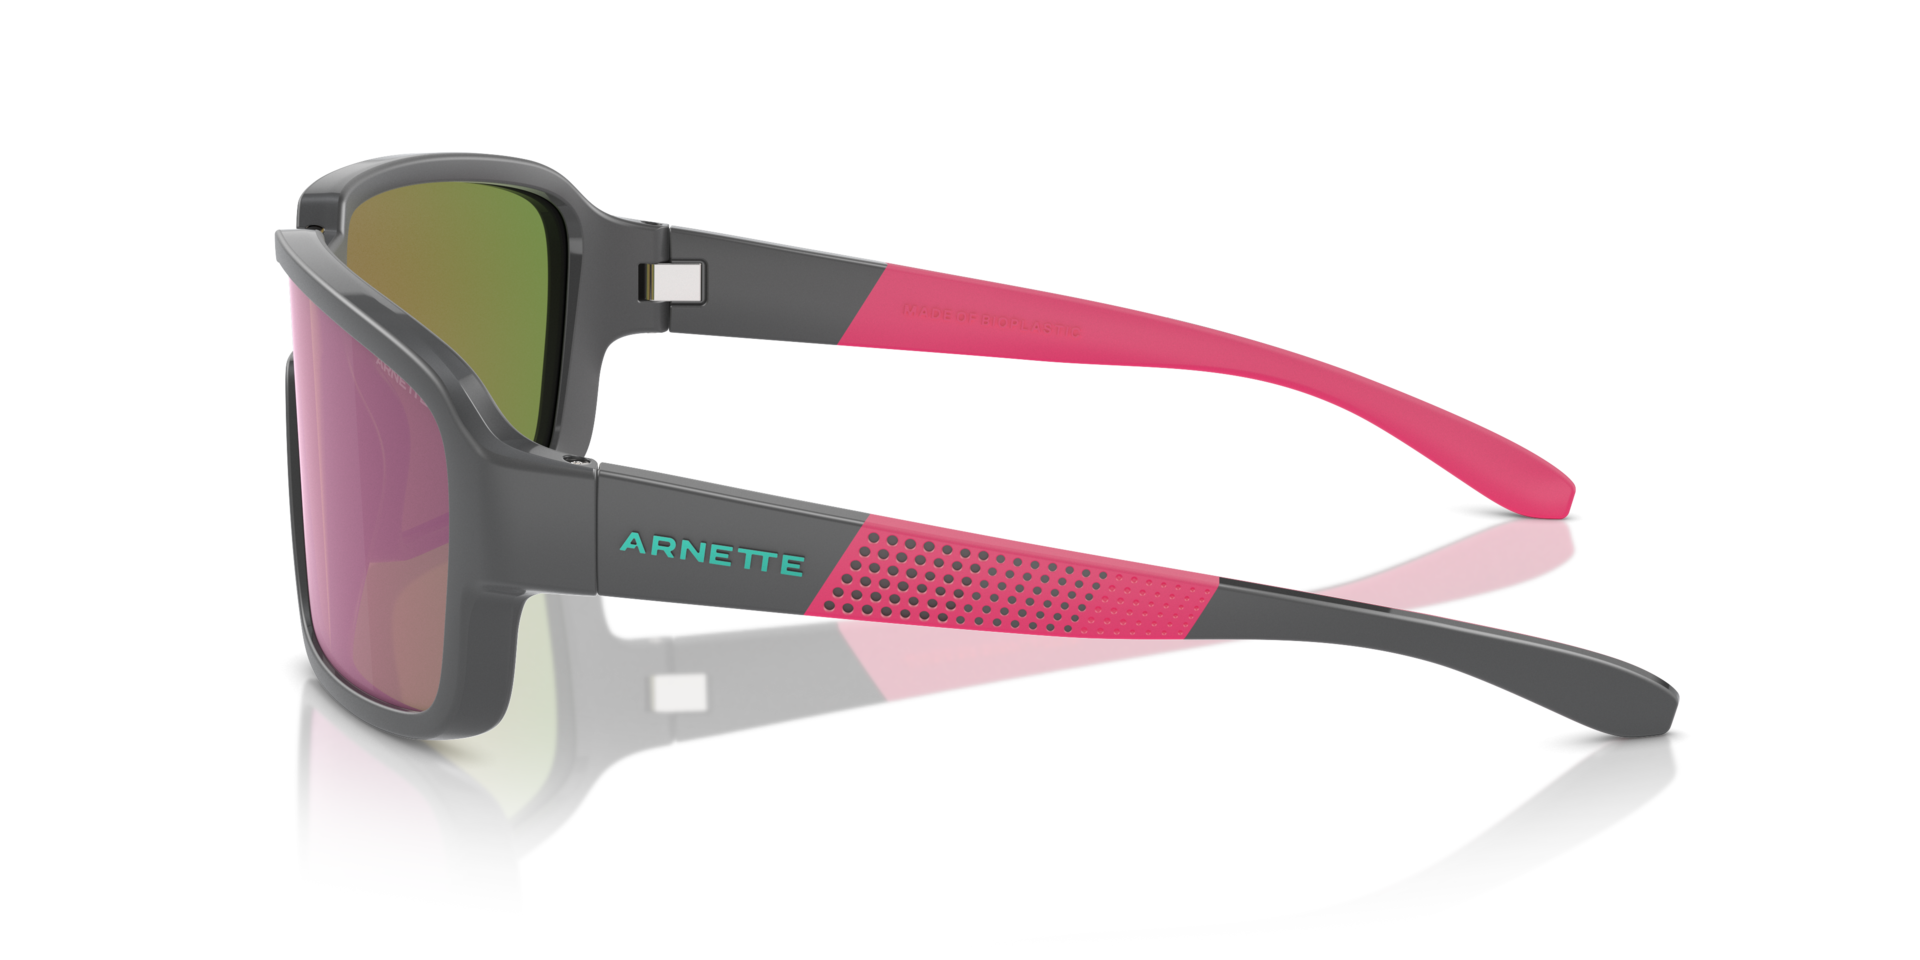 Das Bild zeigt die Sonnenbrille AN4335 28414X von der Marke Arnette in schwarz/rosa.